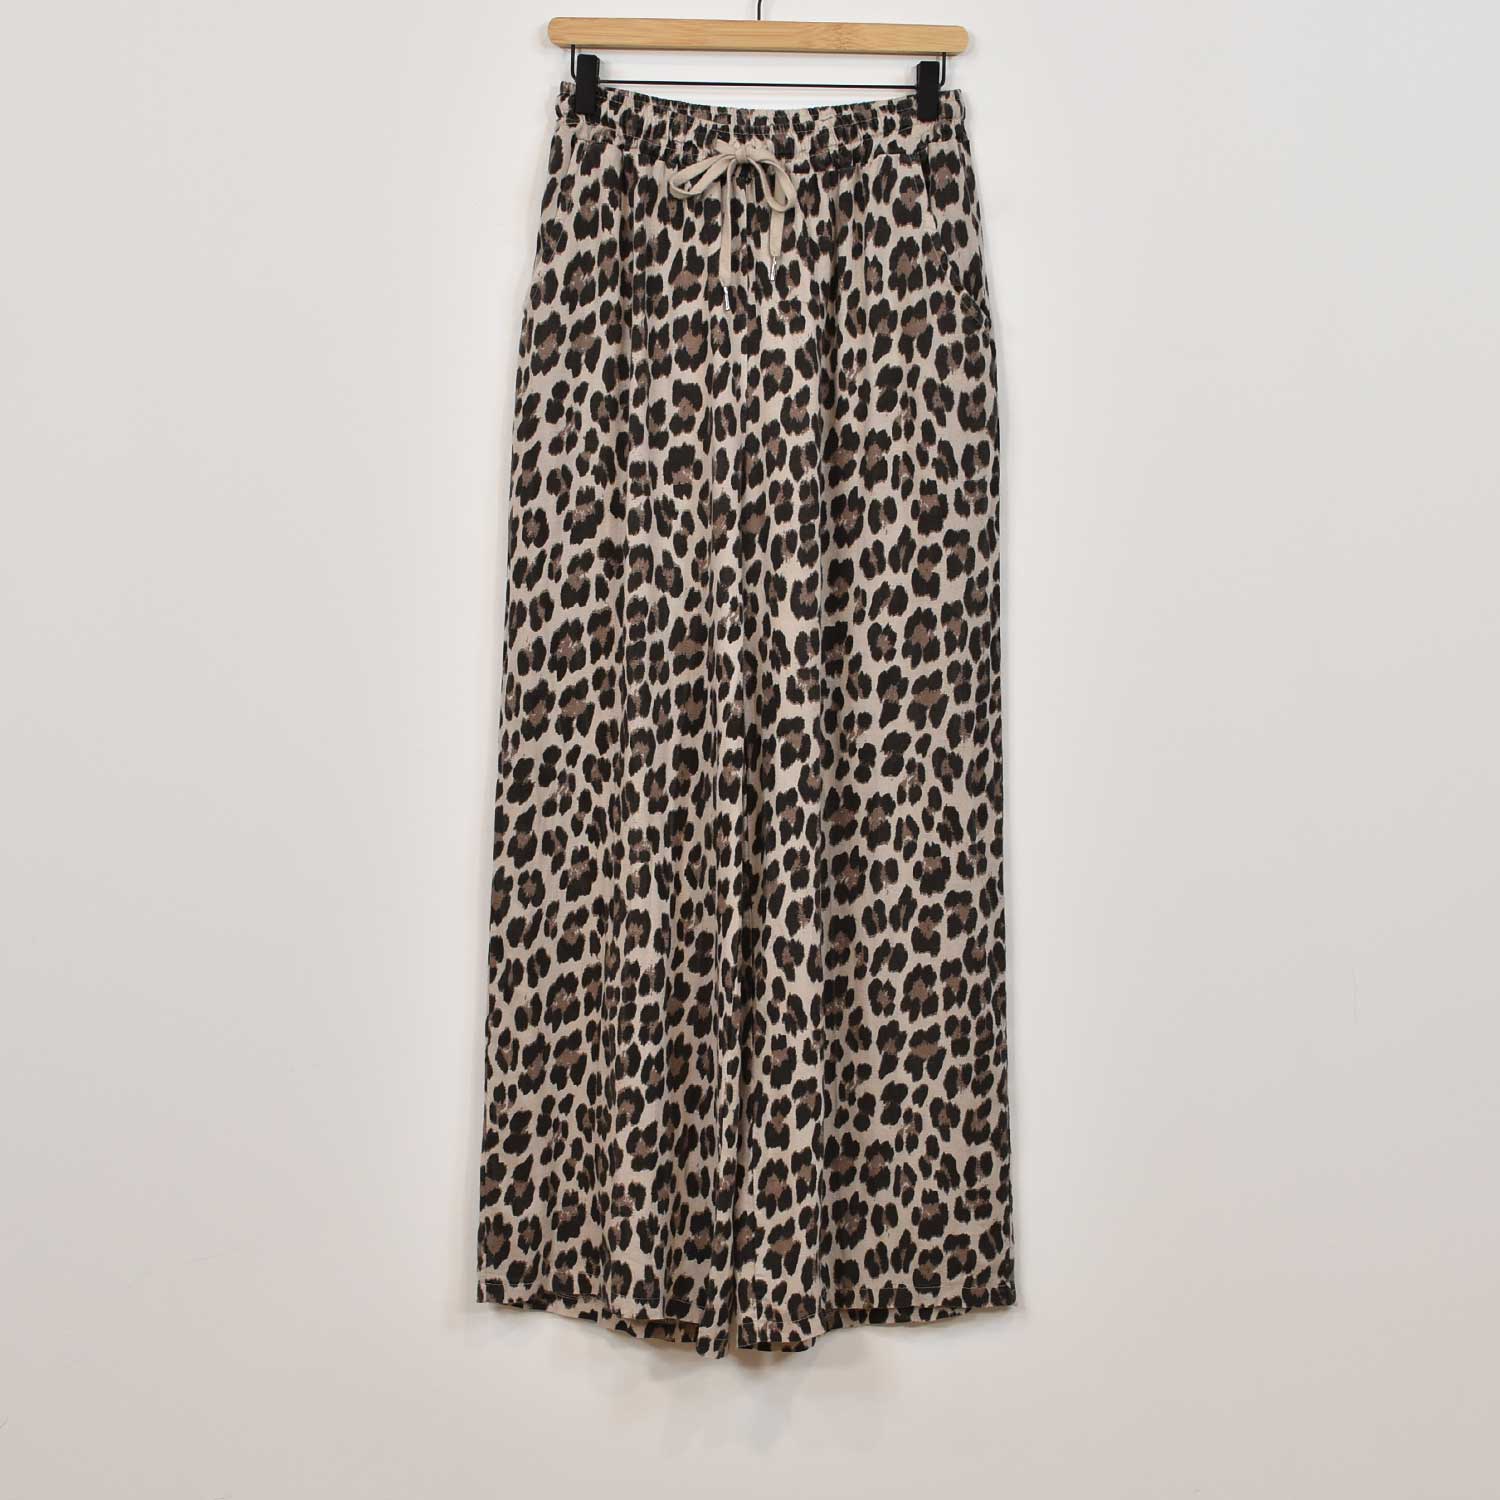 Leopard linen pants